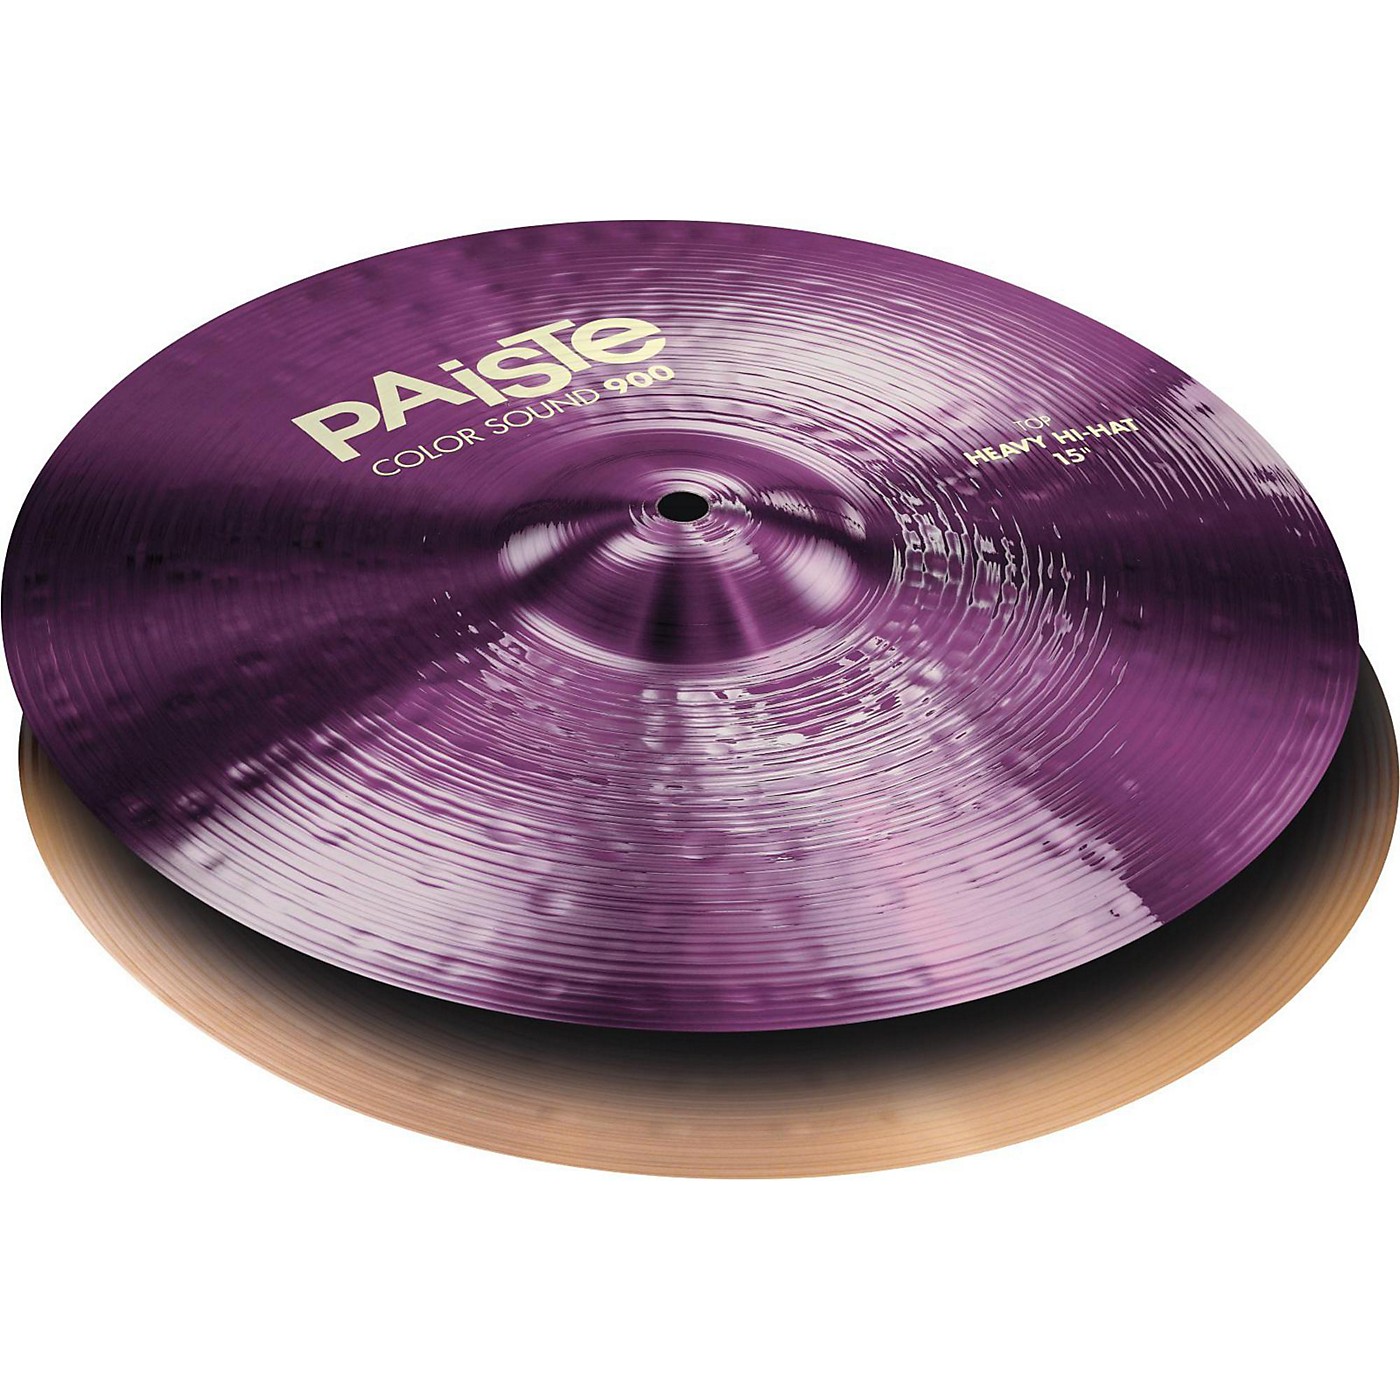 Paiste Colorsound 900 Heavy Hi Hat Cymbal Purple thumbnail